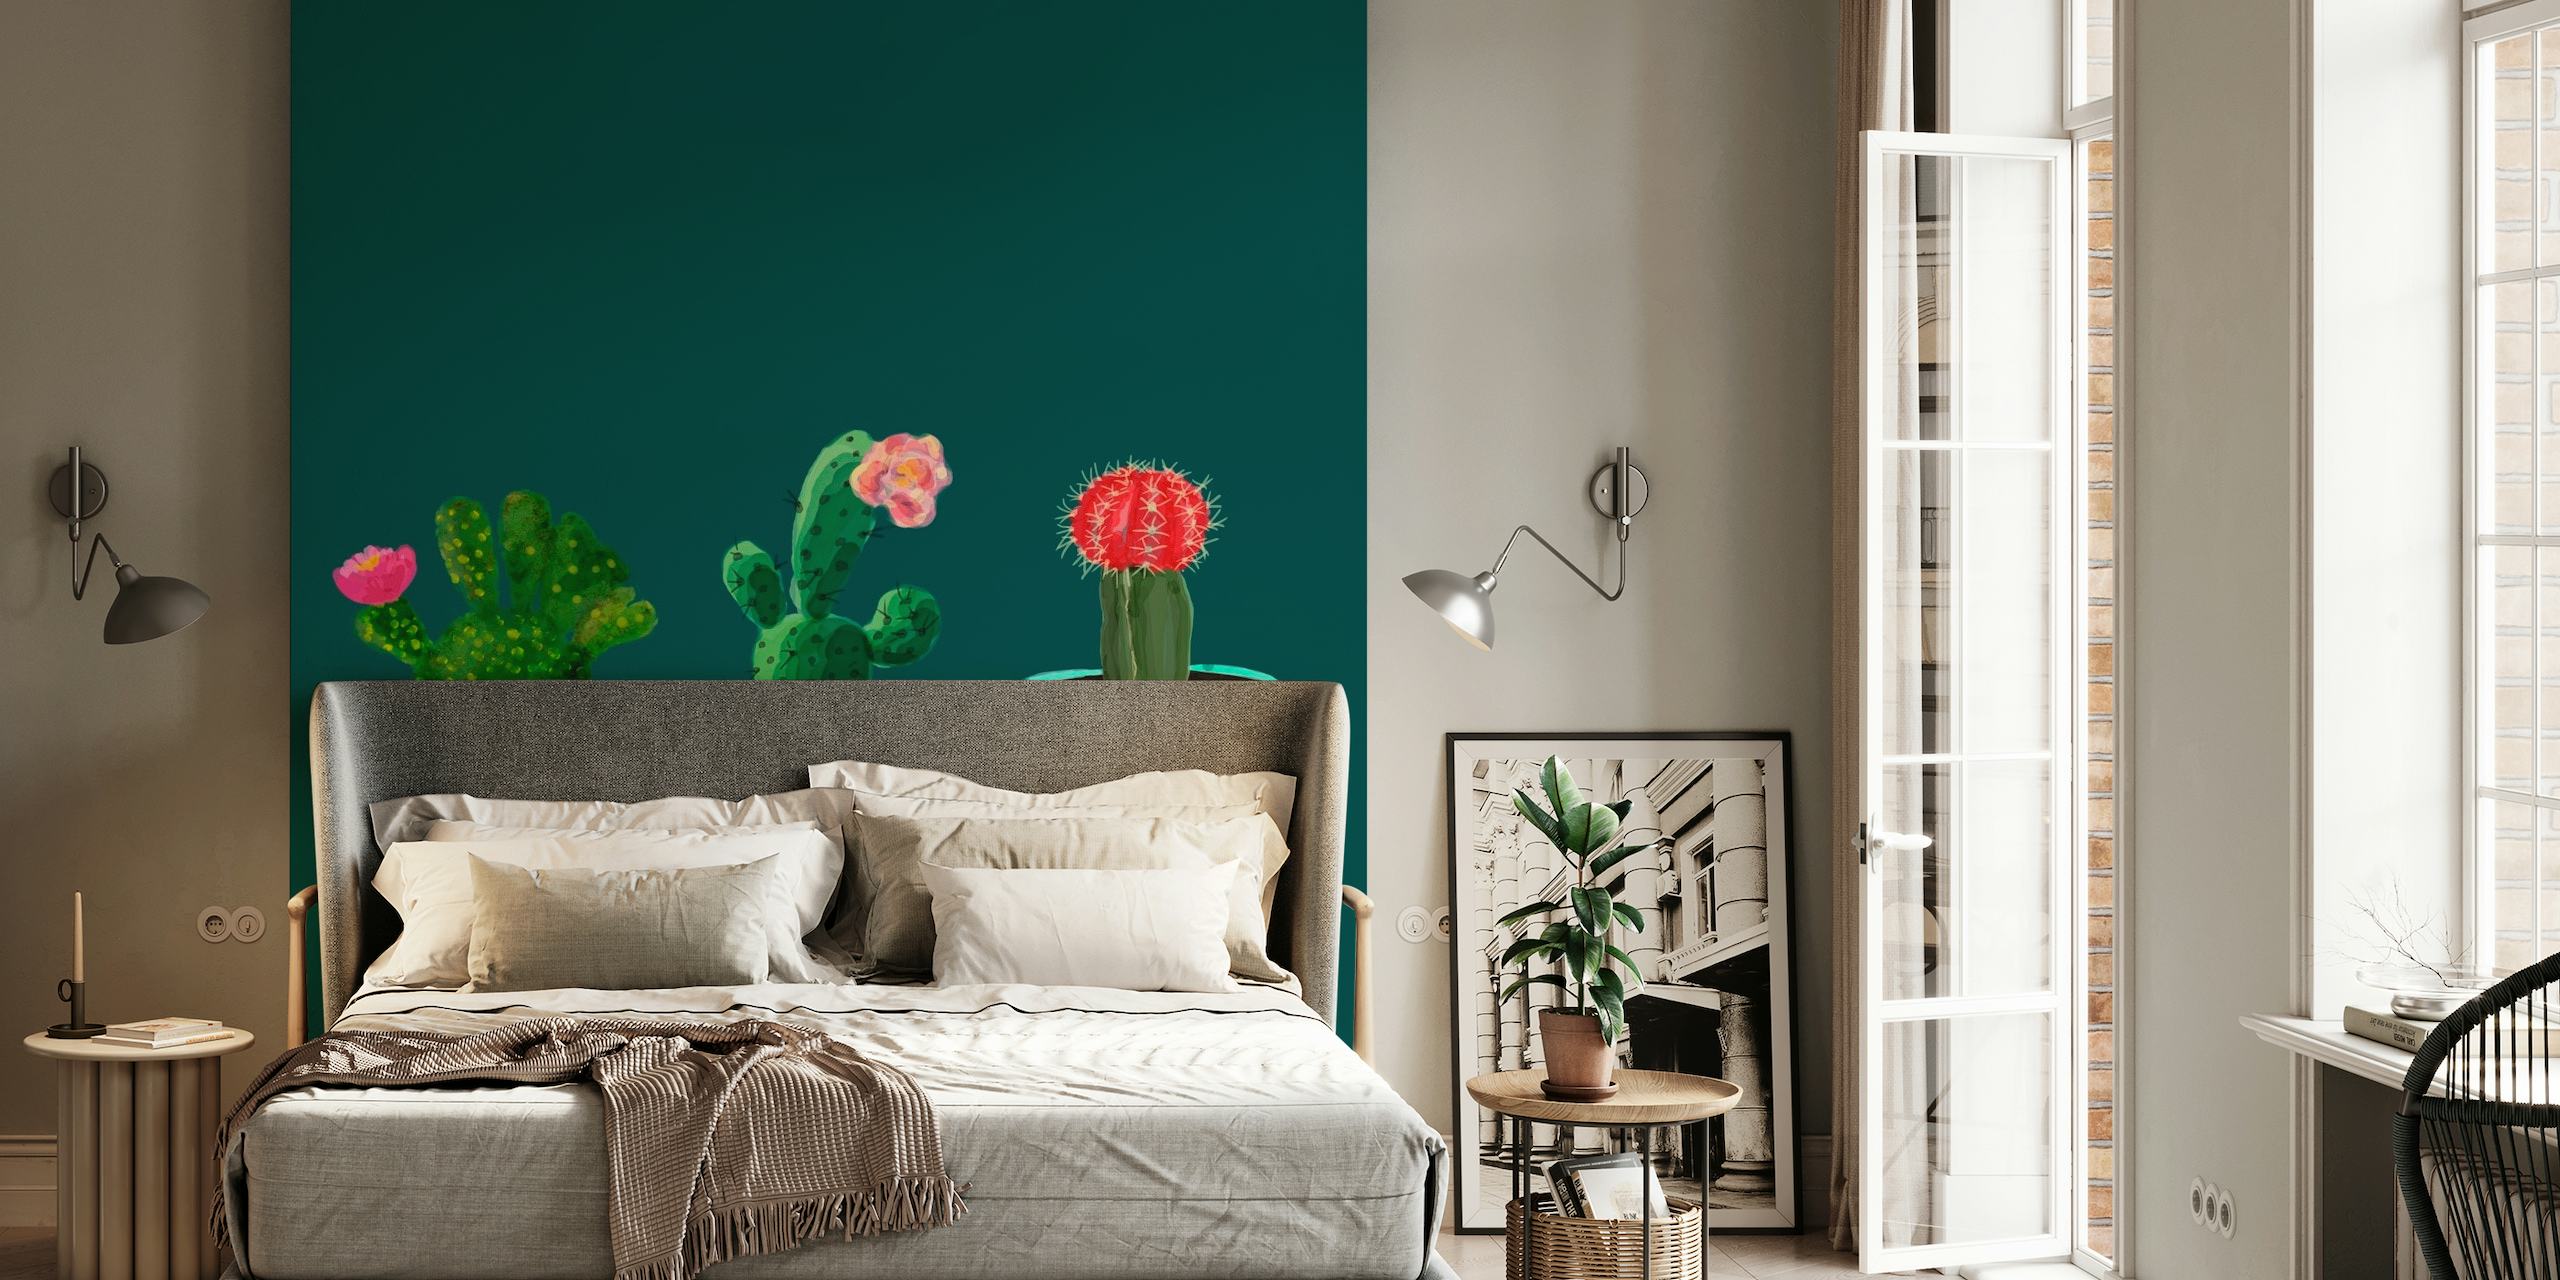 Tři květinové kaktusy ilustrace na nástěnné malbě s tmavým pozadím.